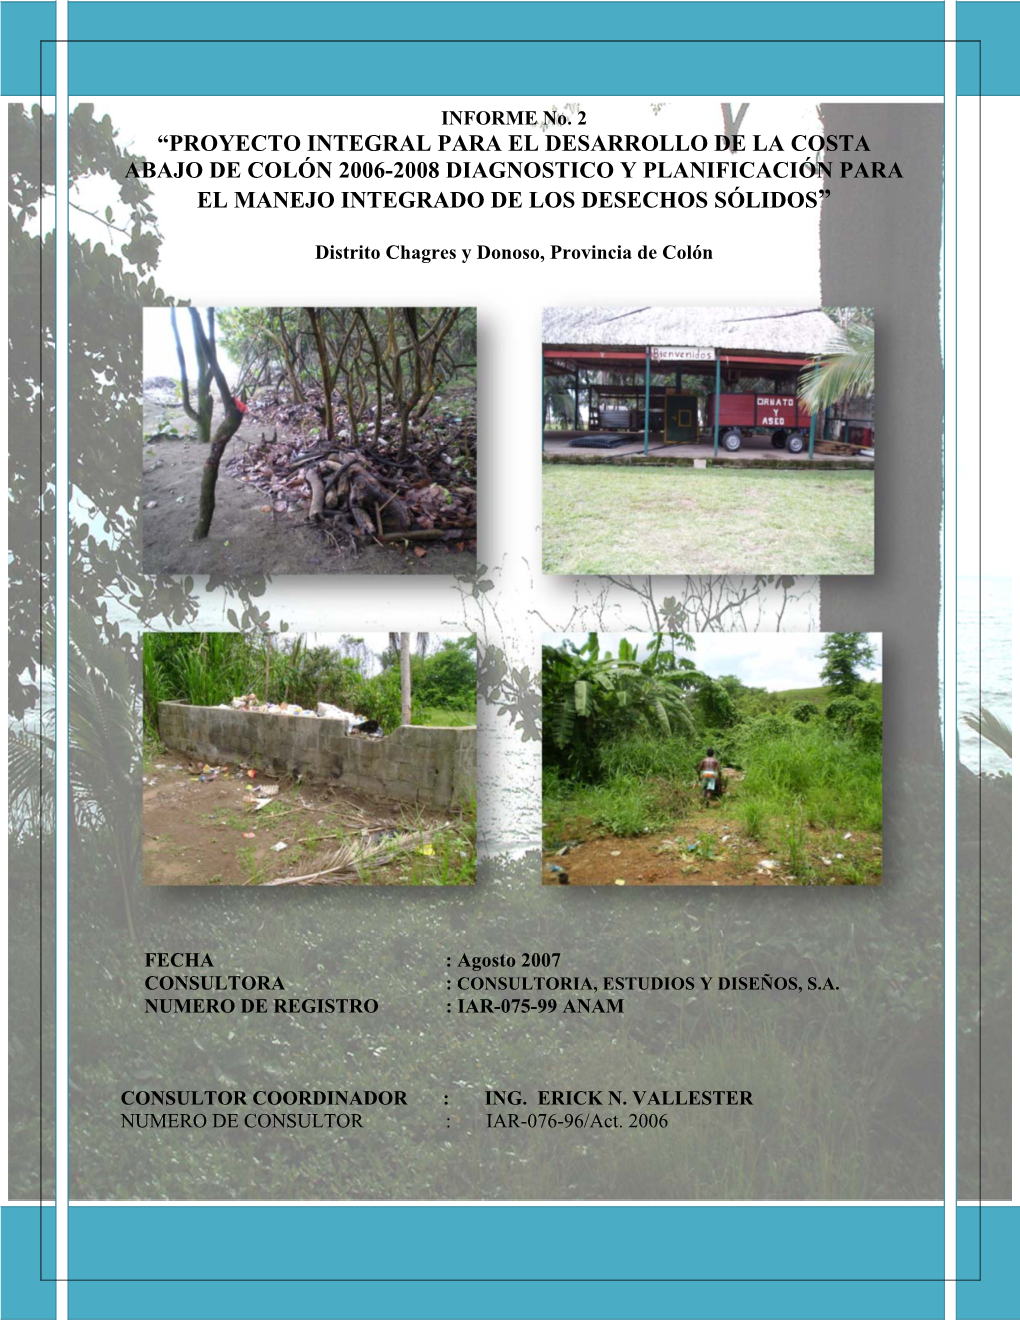 Proyecto Integral Para El Desarrollo De La Costa Abajo De Colón 2006-2008 Diagnostico Y Planificación Para El Manejo Integrado De Los Desechos Sólidos”